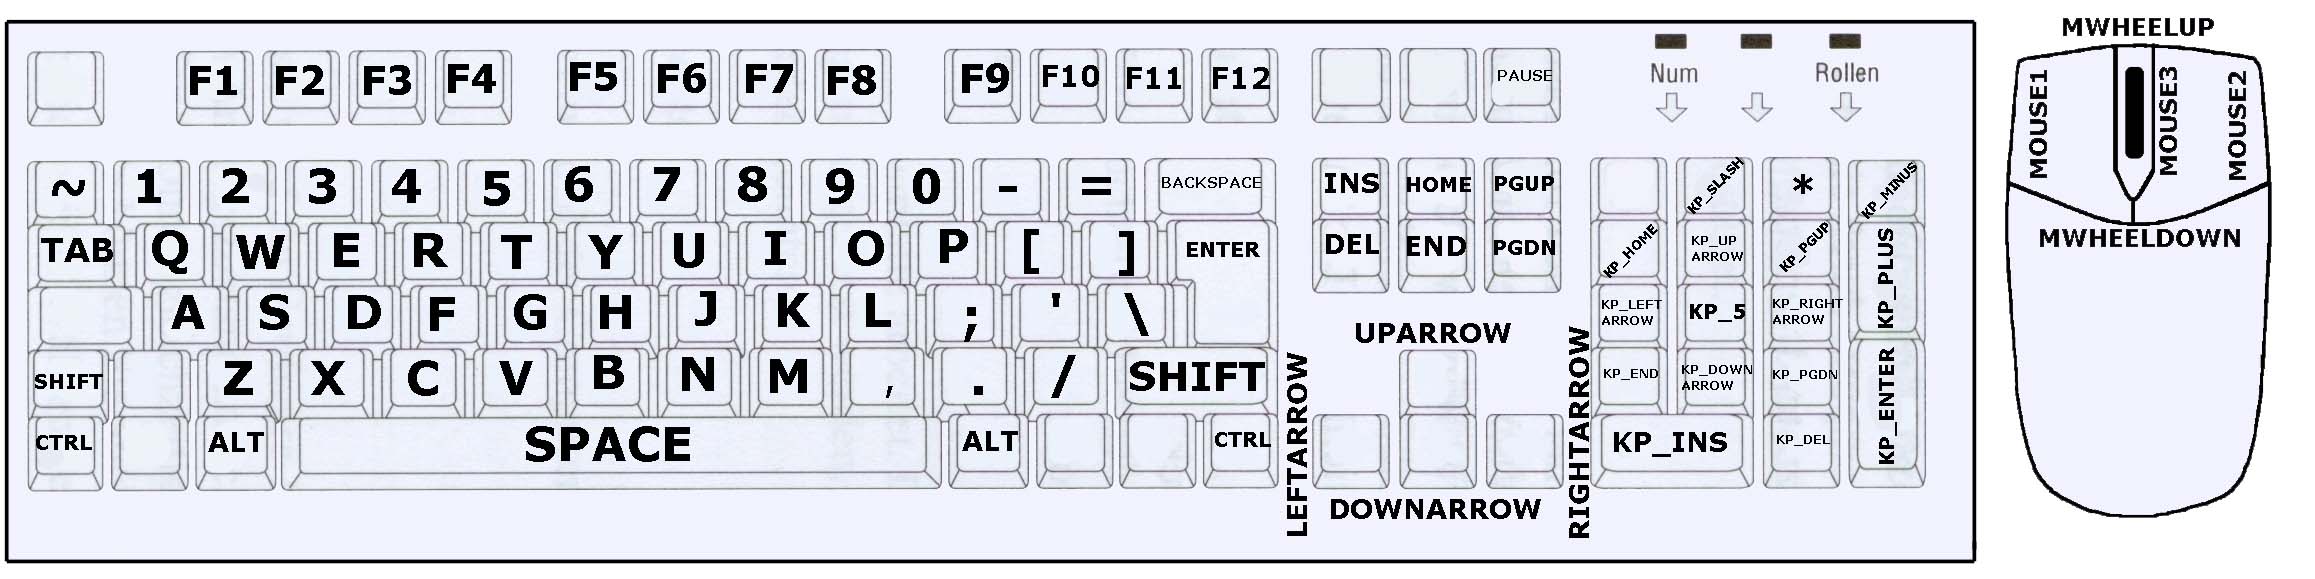 Что такое бинды. Название кнопокдля бинта. Название кнопок для биндов. Кнопка бинд на клавиатуре. Название клавиш для биндов в КС го.